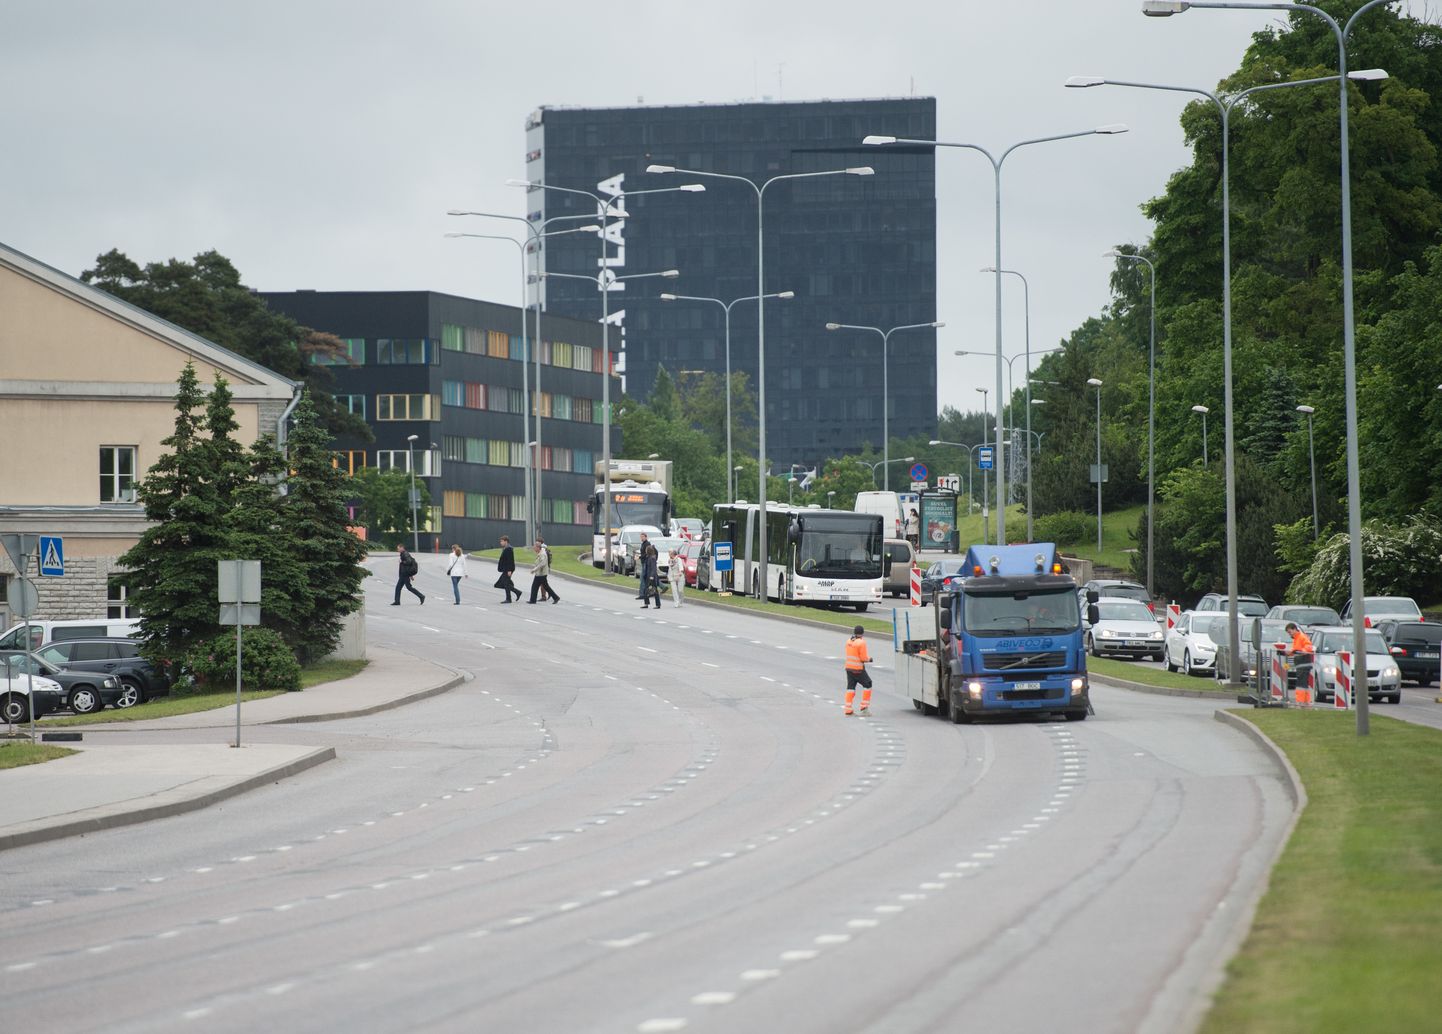 Järvevana tee, Tallinn, 25.06.2015
Tammsaare tee sulgemine. Liiklus Tammsaare ja Järvevana teel.
FOTO: MIHKEL MARIPUU/POSTIMEES